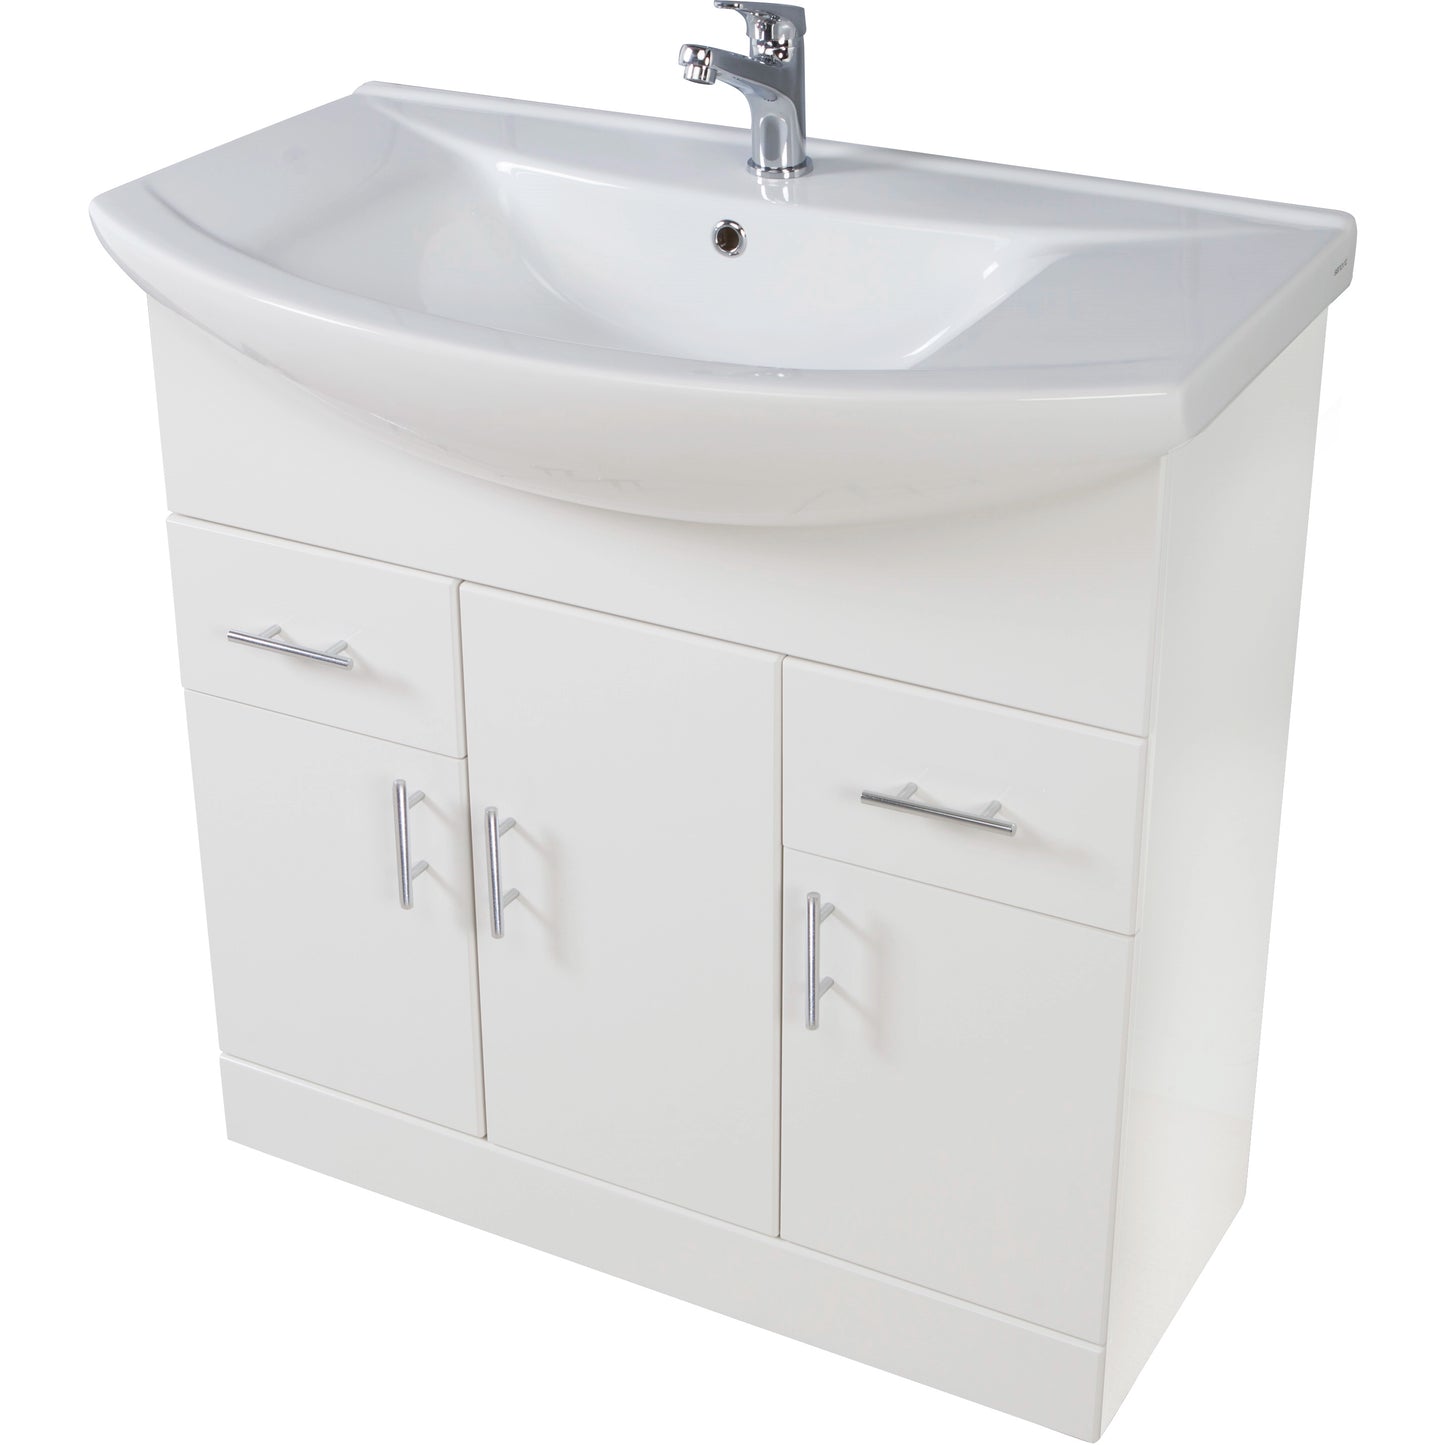 Lanza Floor Standing Basin Sink Vanity Unit